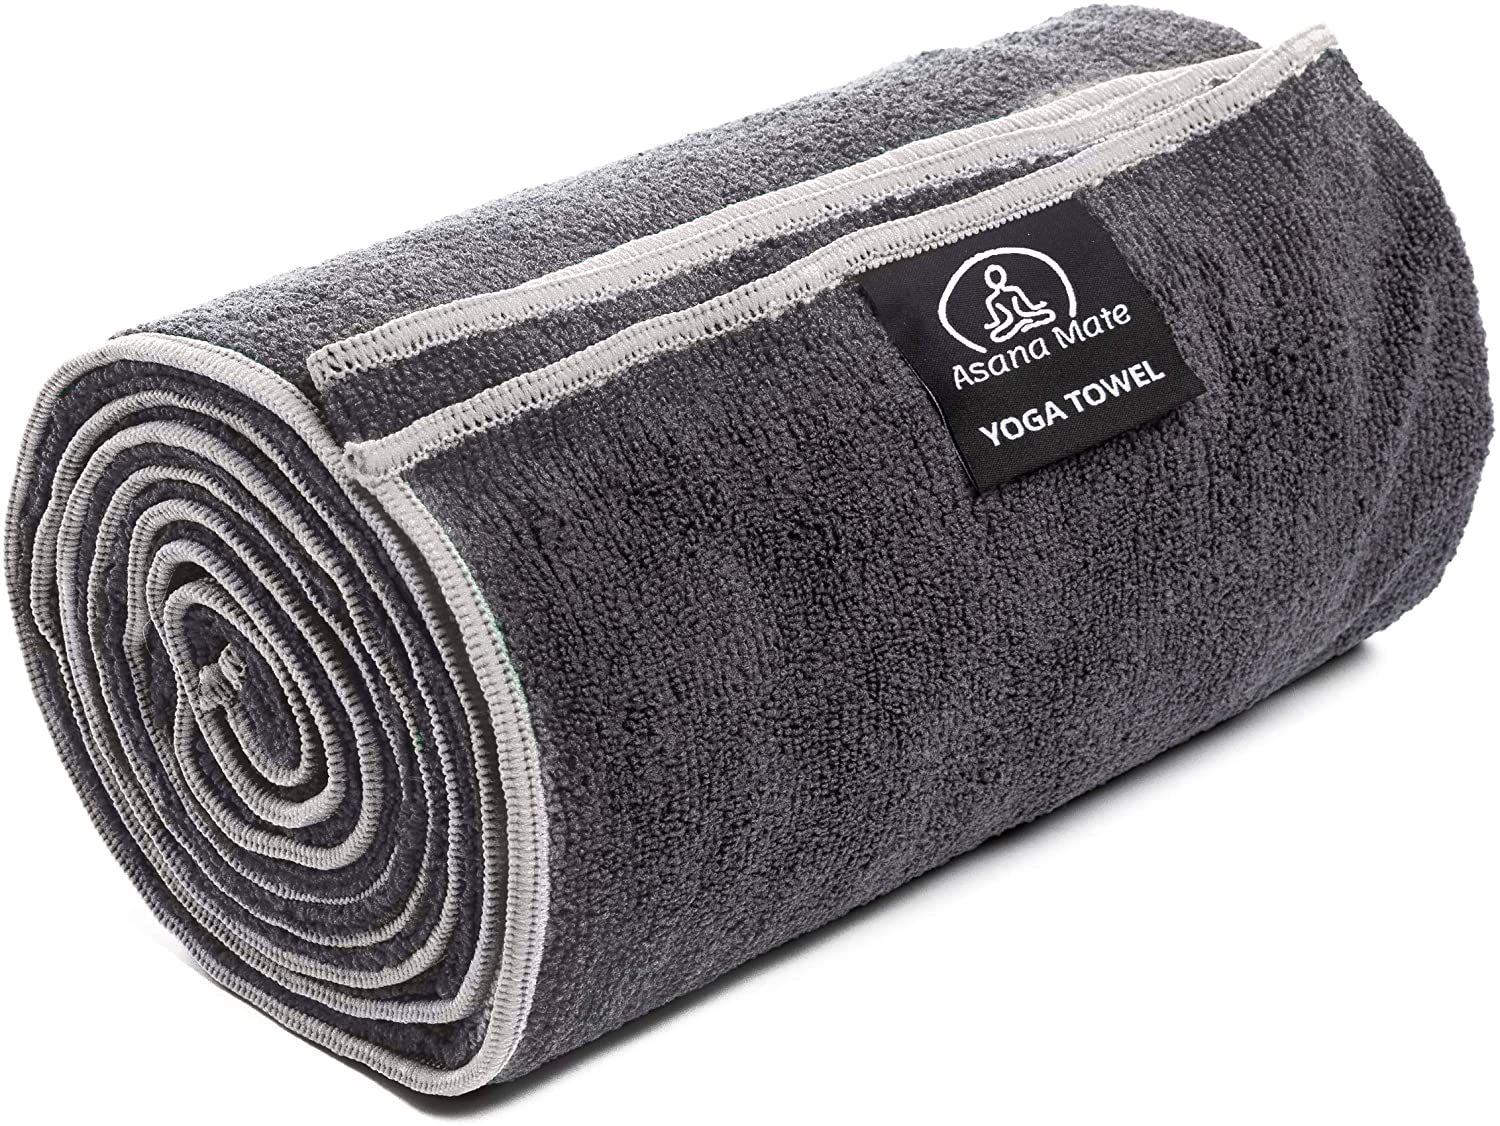 Toalla de yoga, toalla para esterilla de yoga caliente, absorbente del  sudor, antideslizante, para yoga caliente, pilates y entrenamiento, 24 x 72